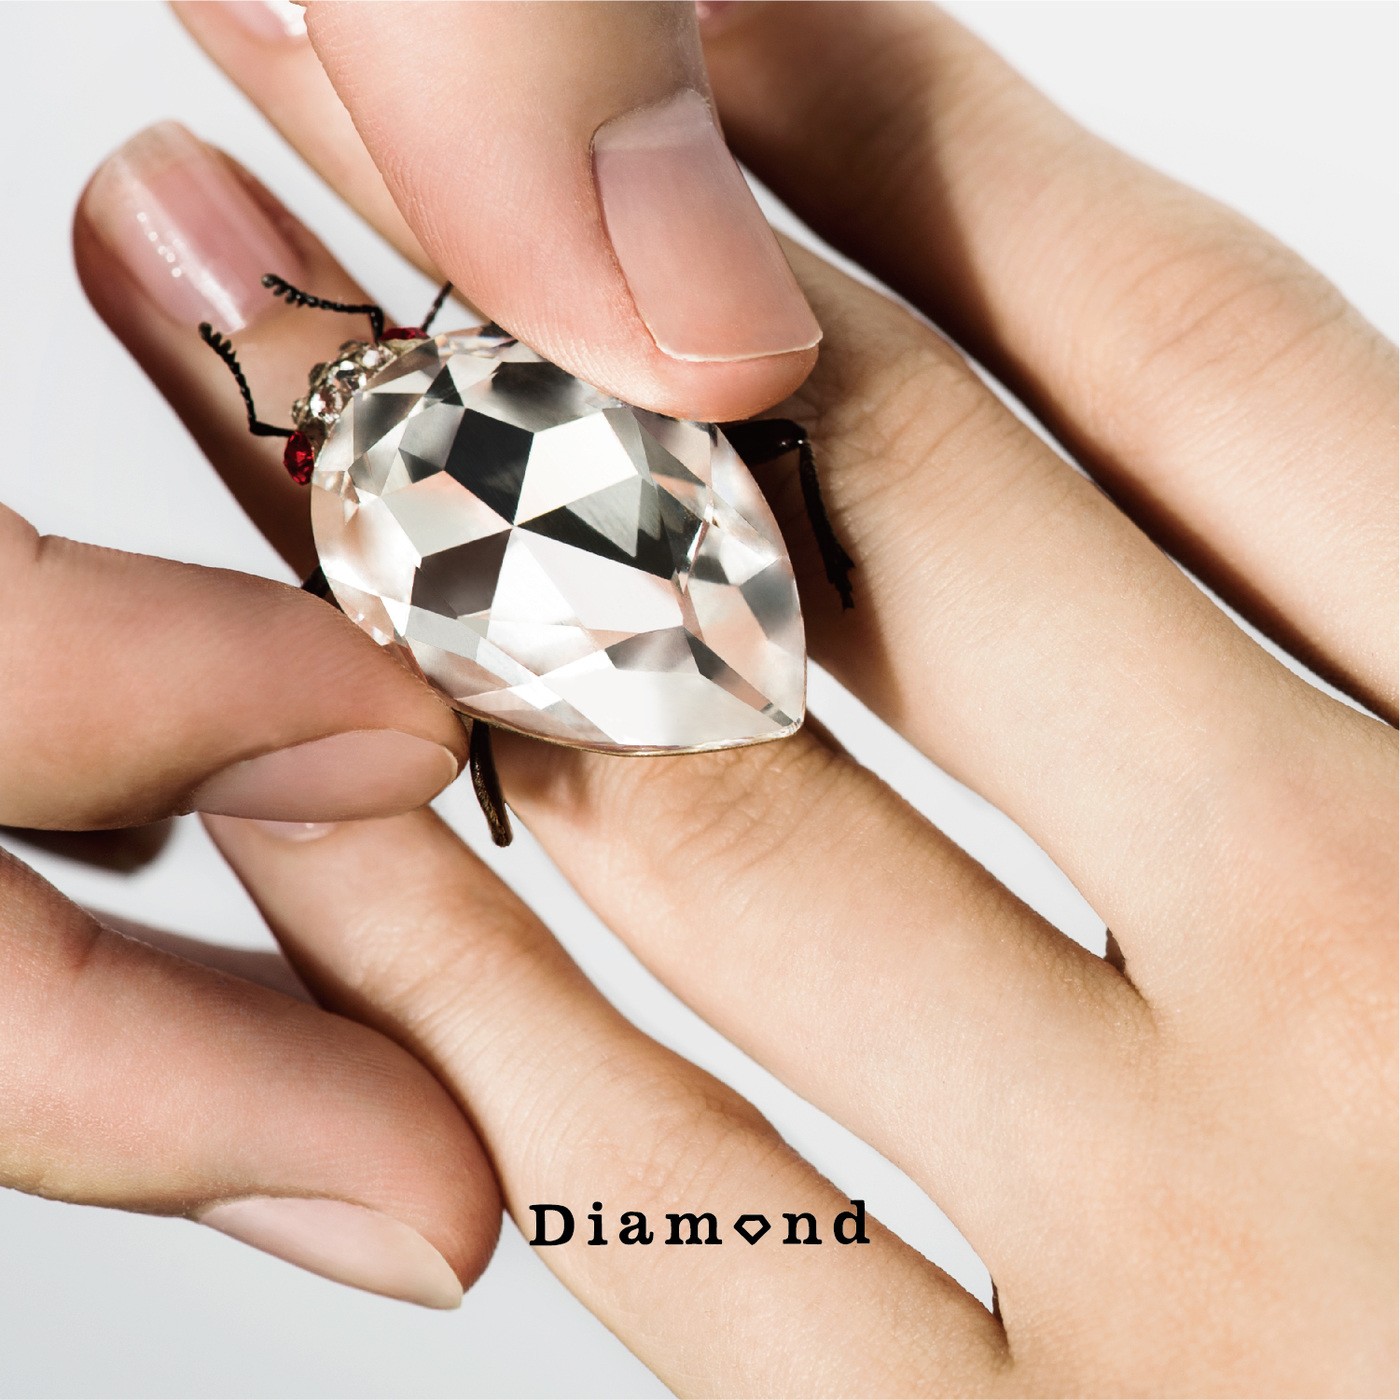 ウソツキ‎ (Usotsuki) – Diamond [FLAC / WEB] [2018.09.26]